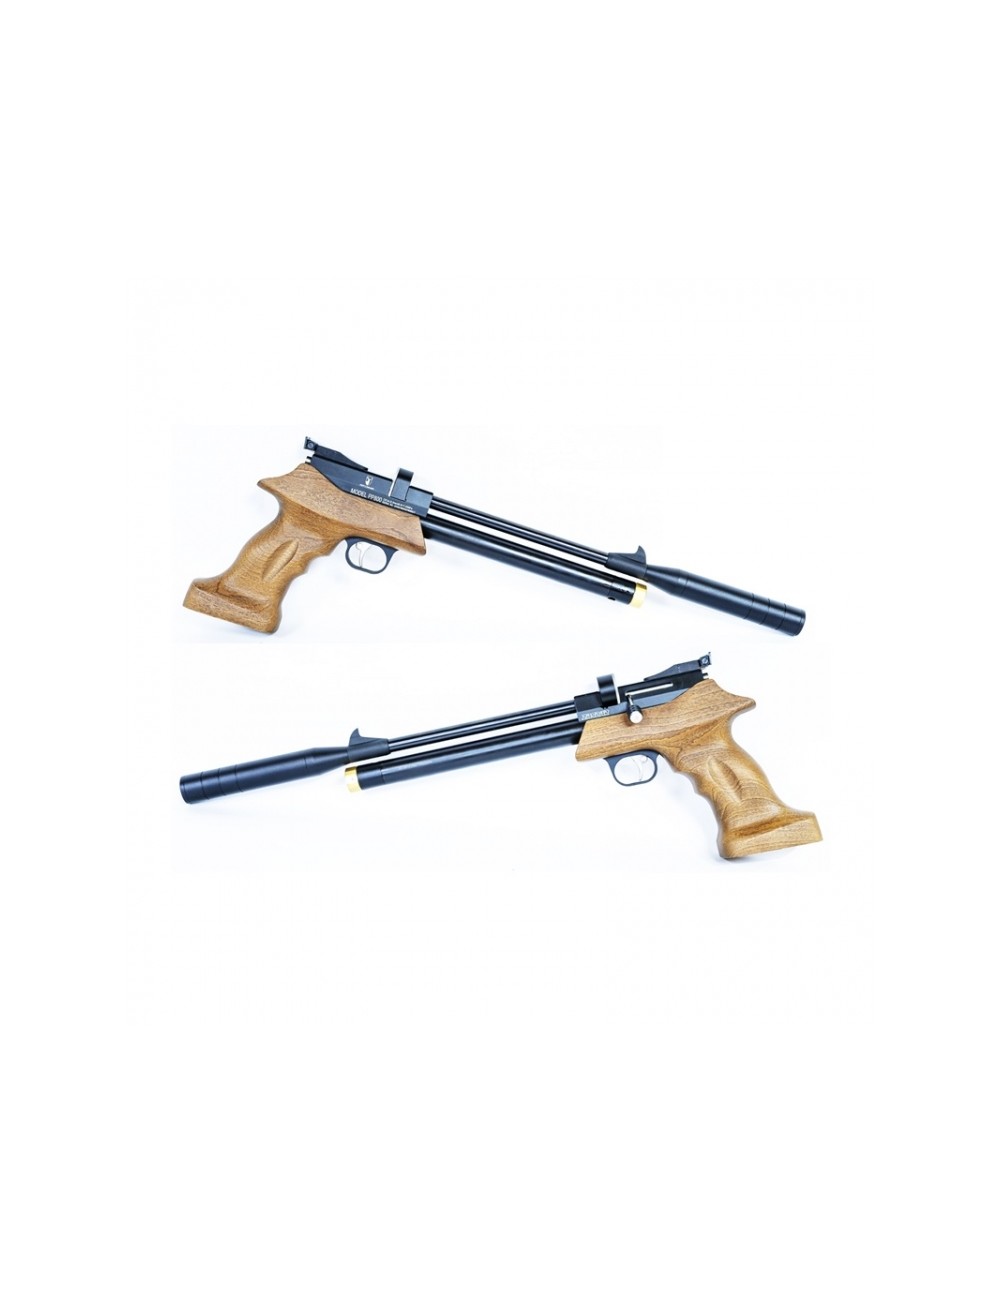 Pistola Zasdar/Artemis SP500 muelle cal. 5,5 mm Balines — Coronel